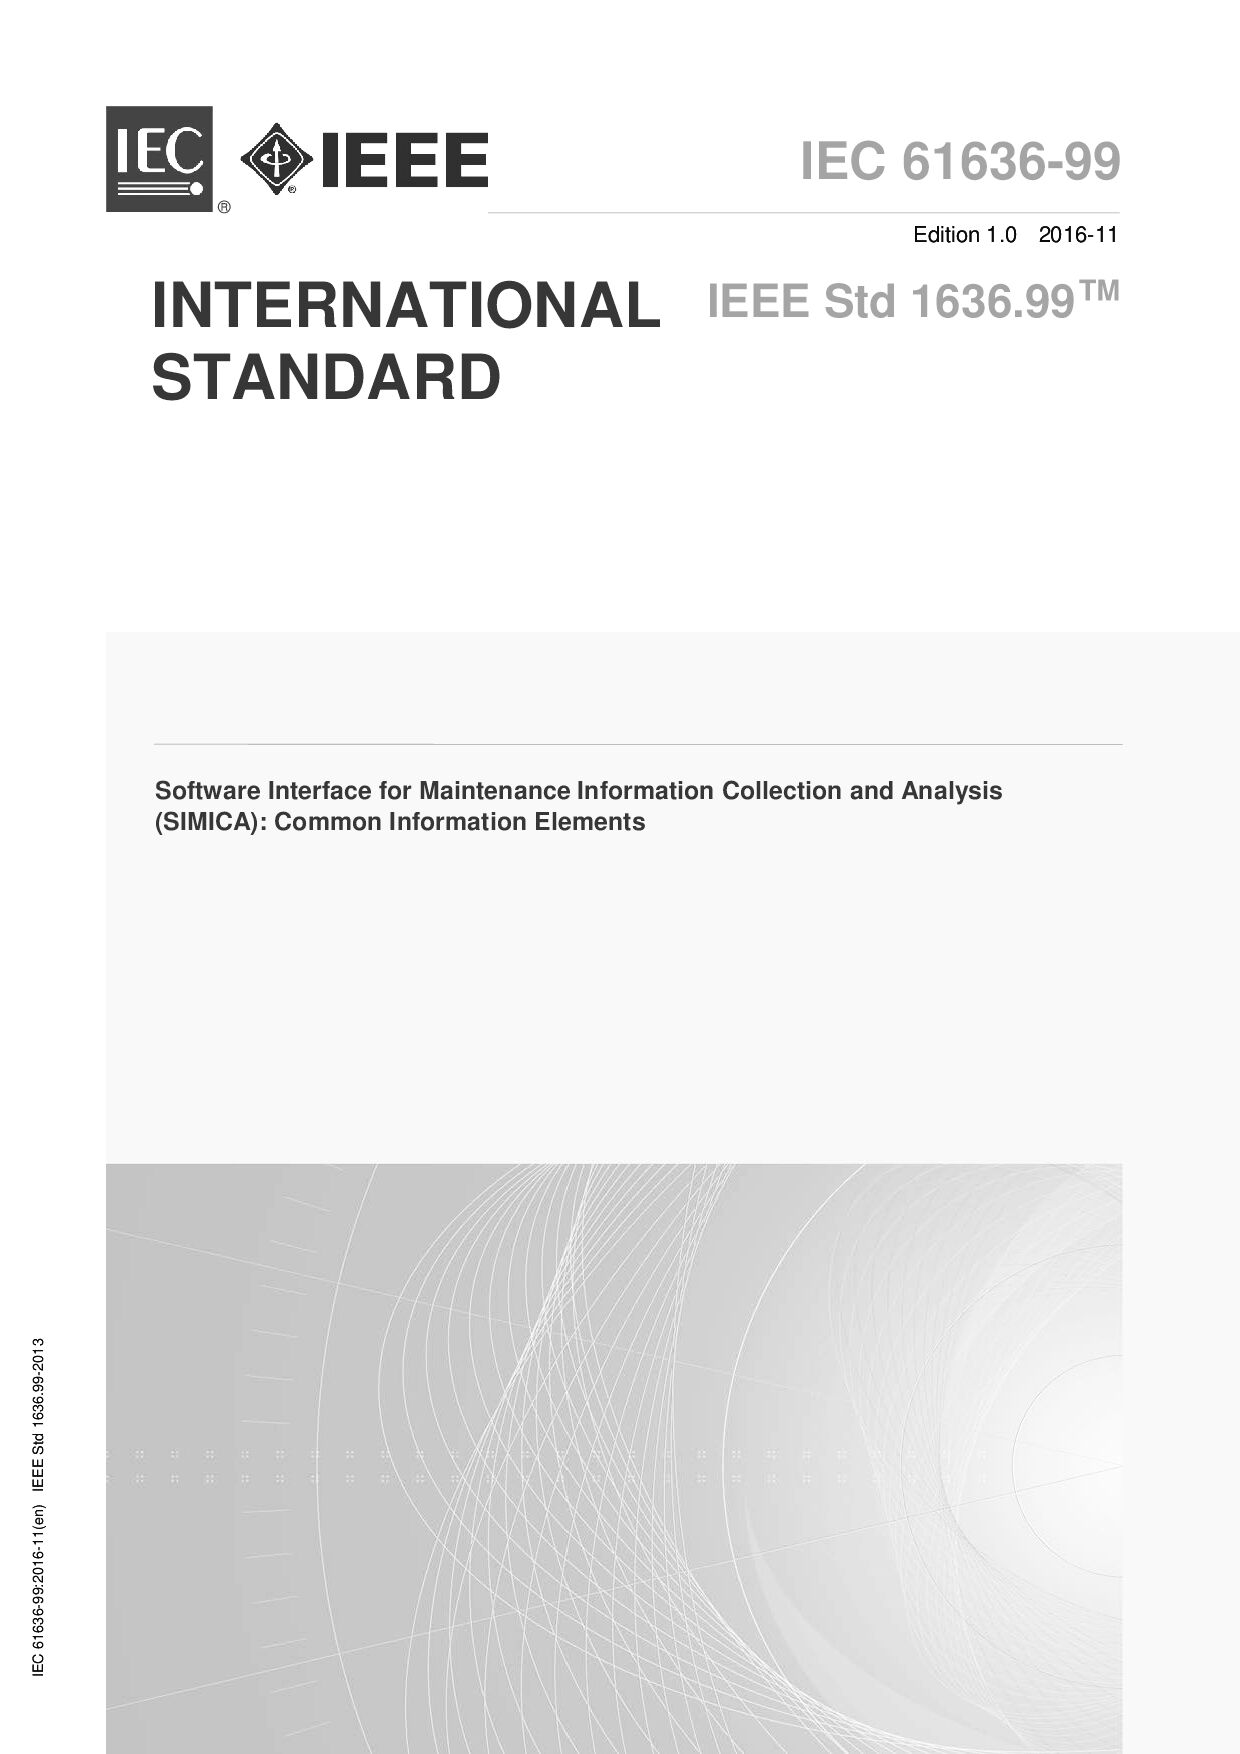 IEC 61636-99-2016 (IEEE Std 1636.99)